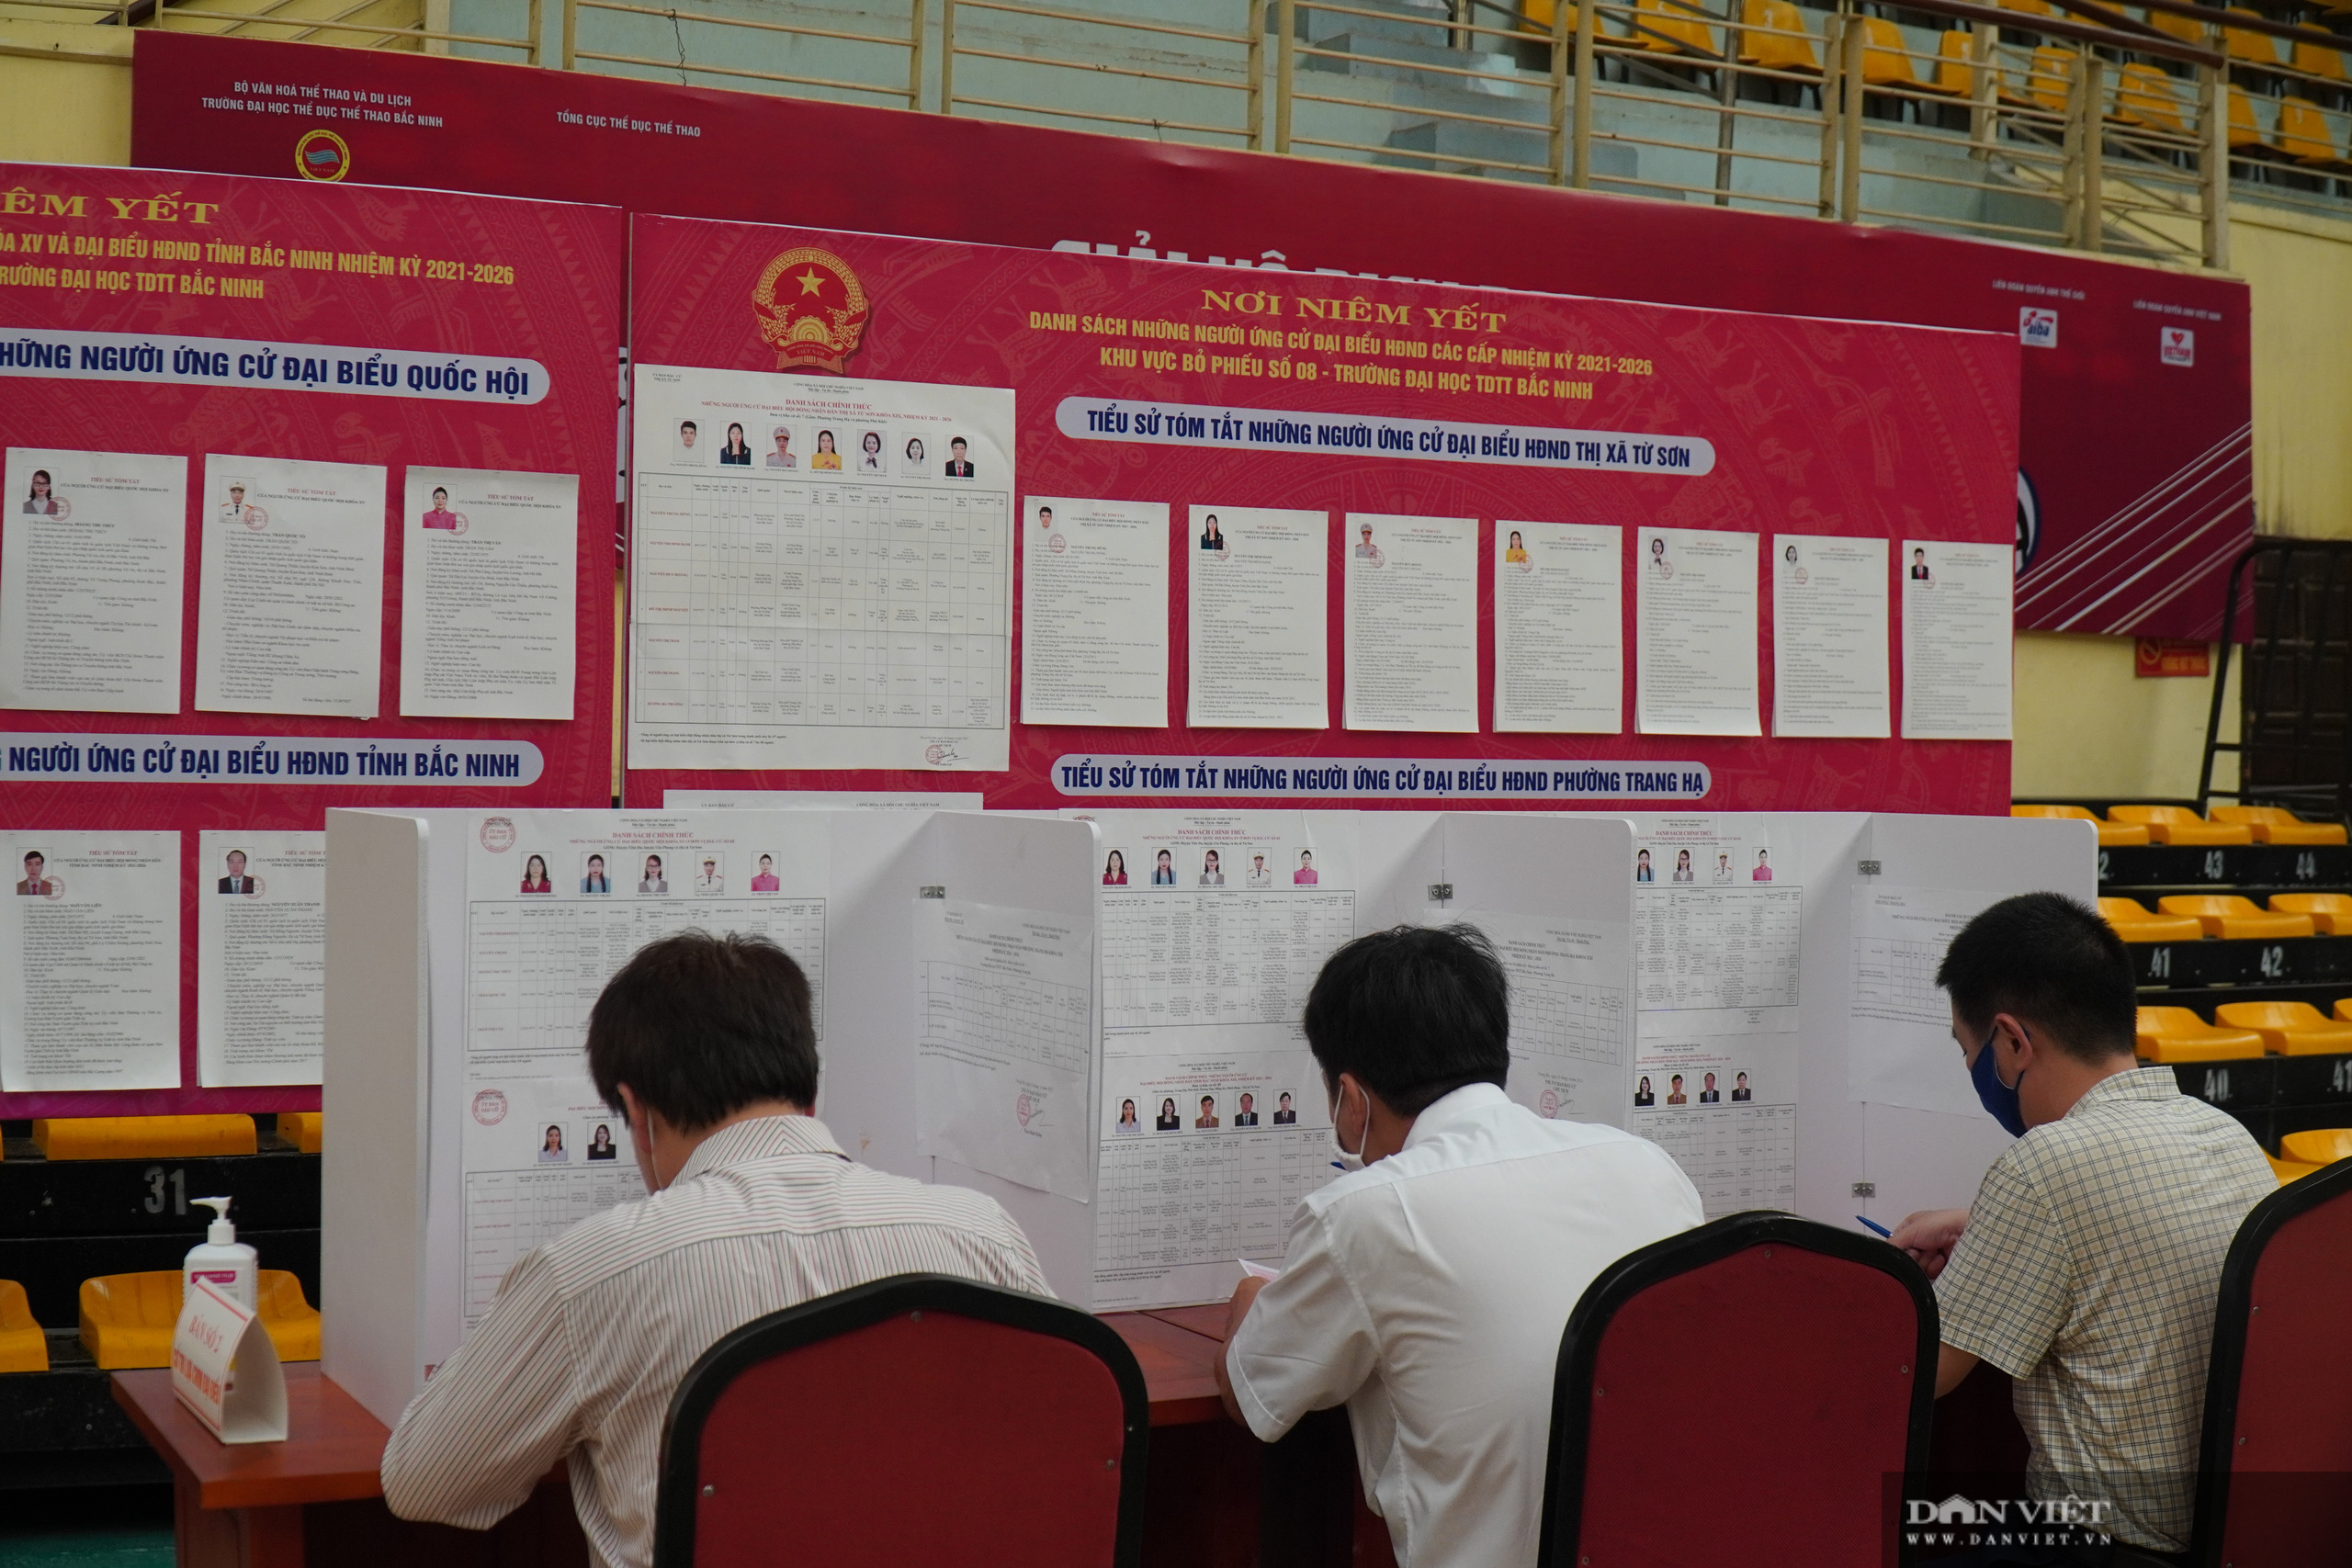 Bắc Ninh: Ngày bầu cử đặc biệt lịch sử trong khu cách ly Covid-19 - Ảnh 15.